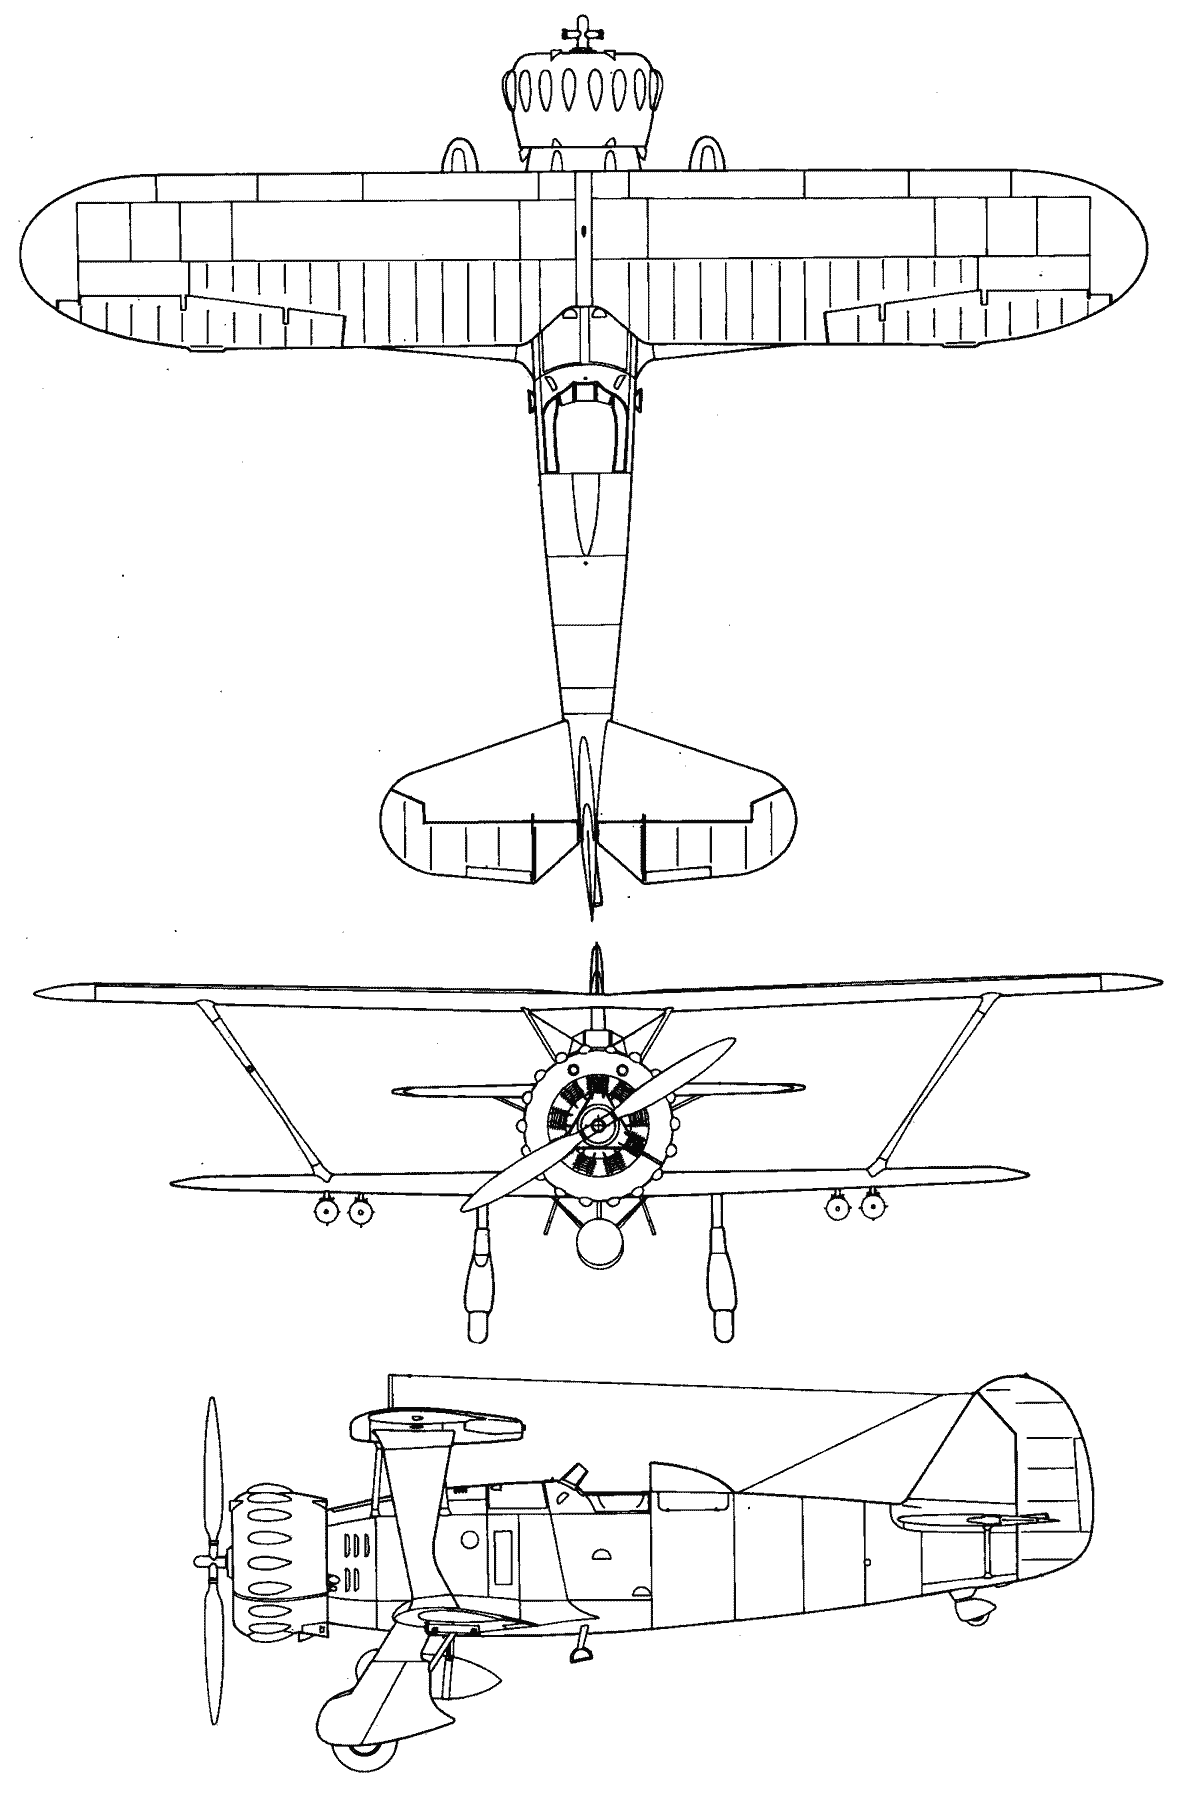 Henschel Hs 123 blueprint